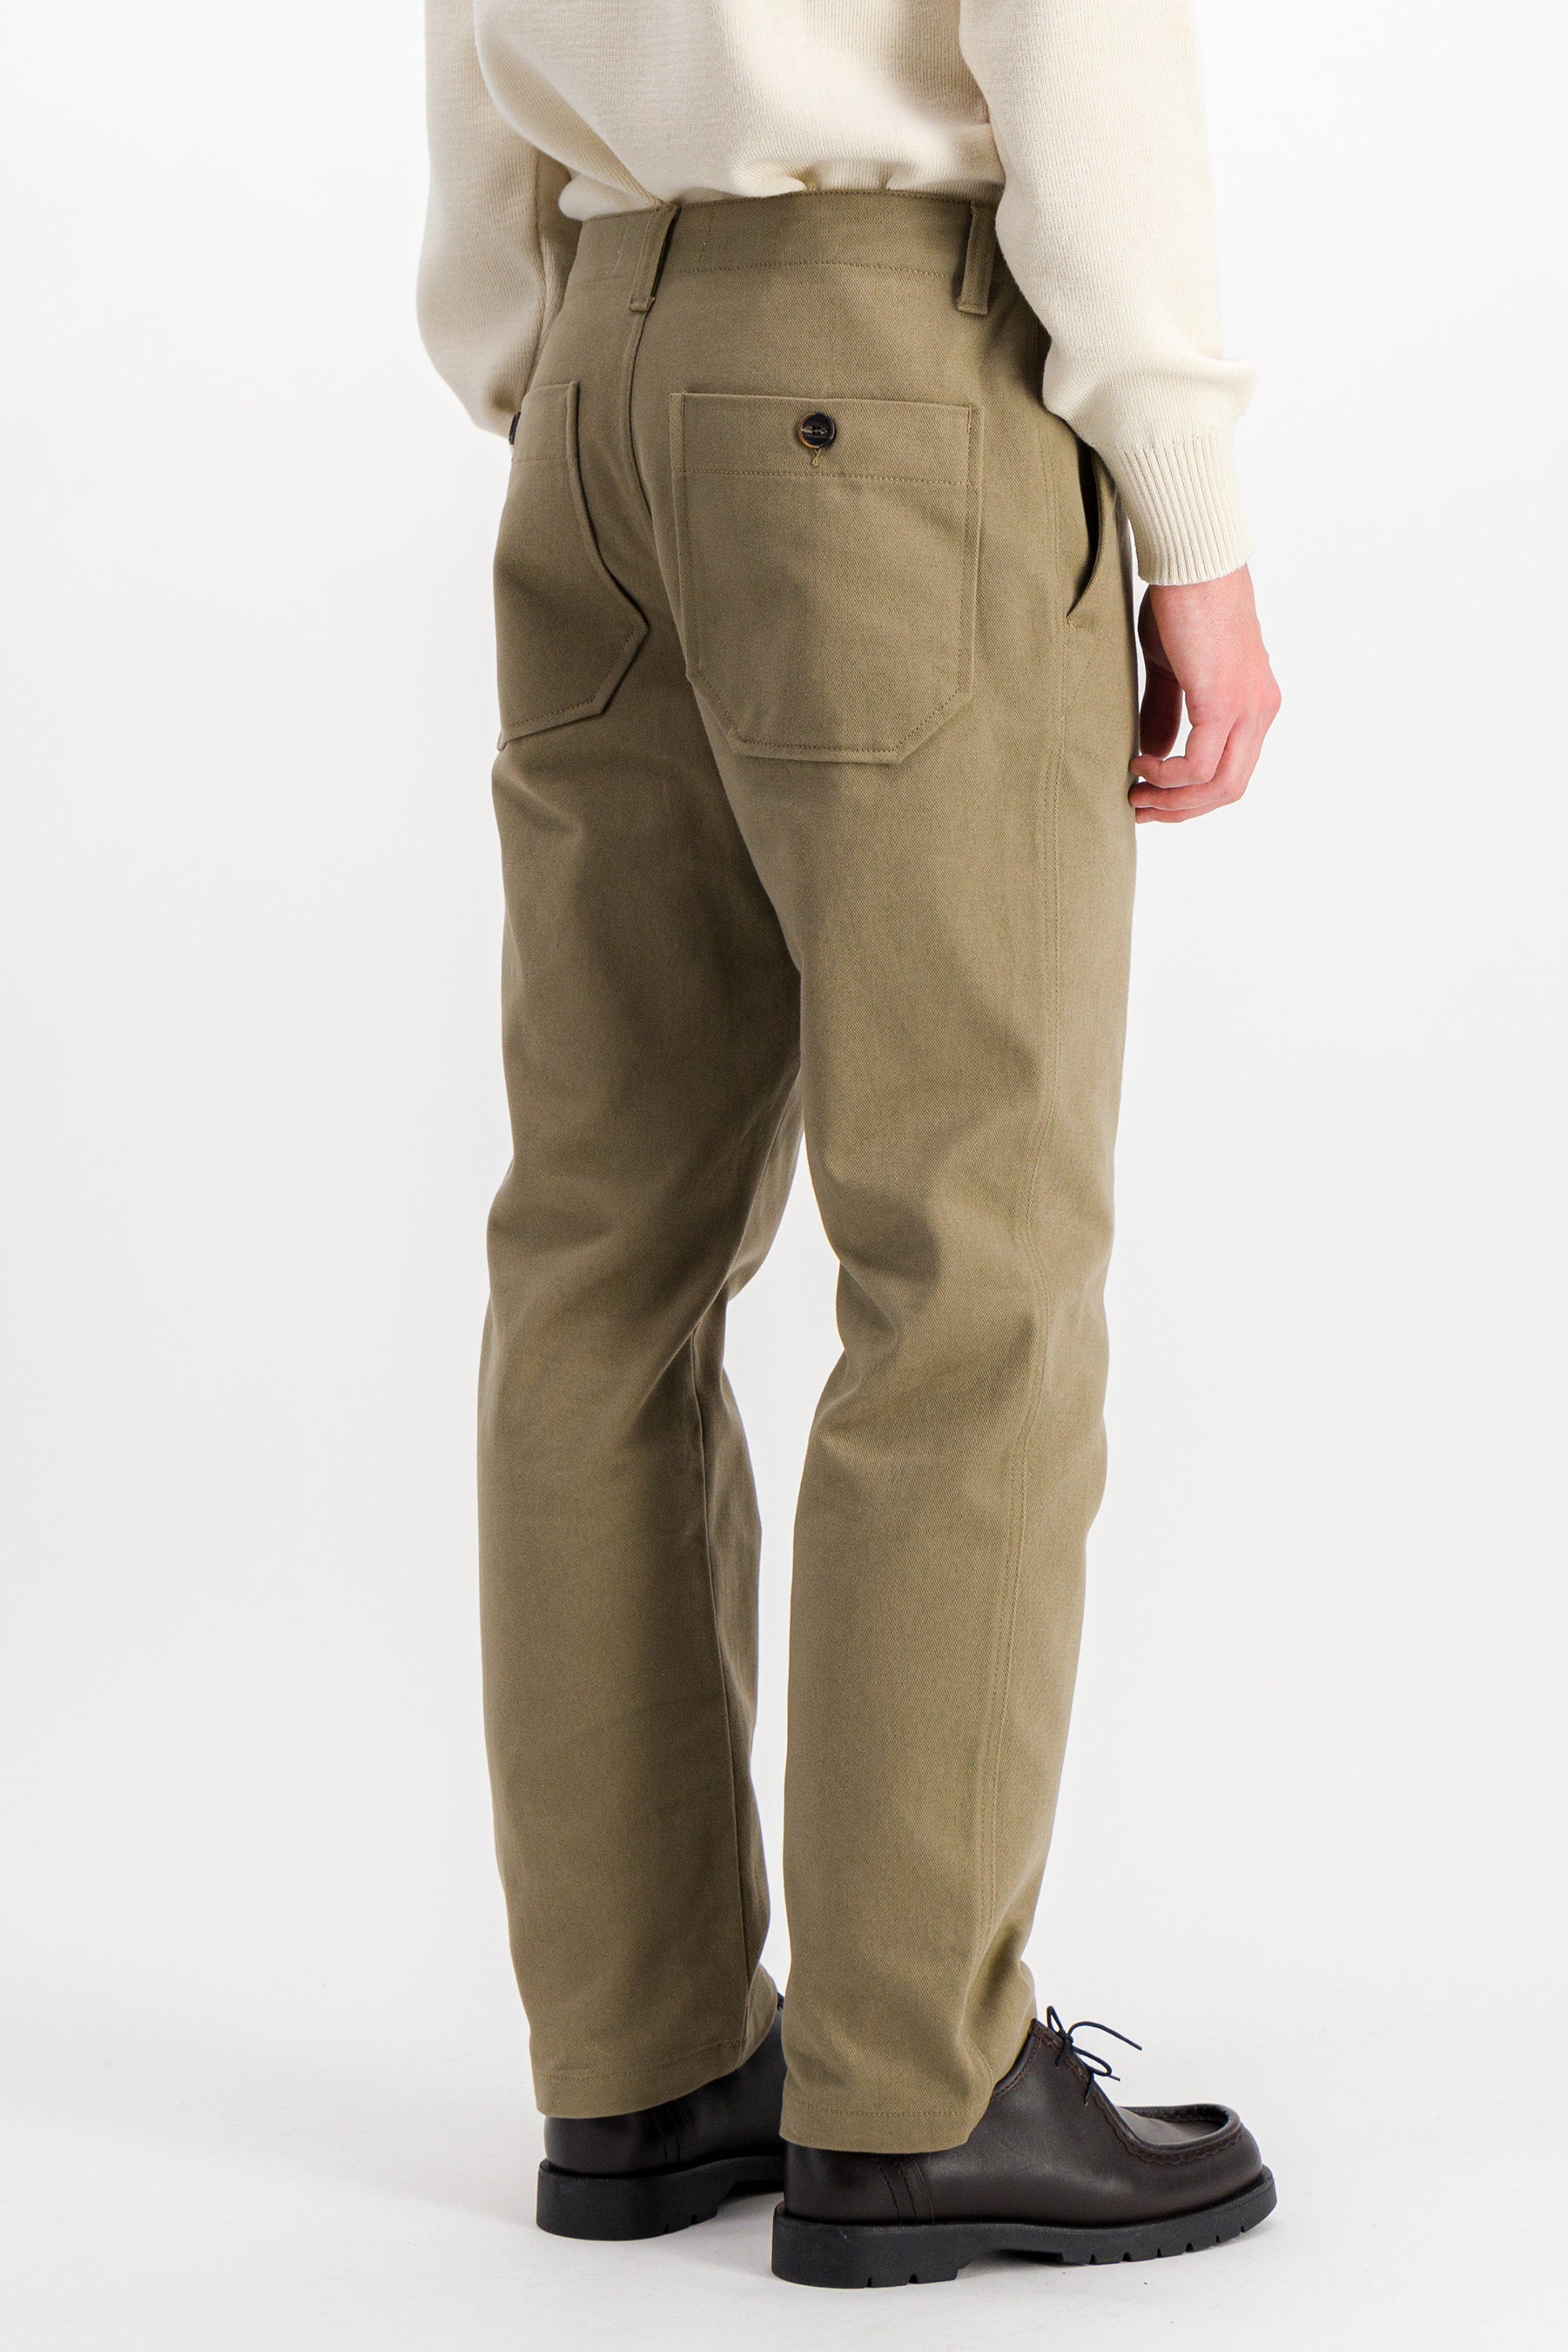 dock-twill-pantalon-workwear-beige